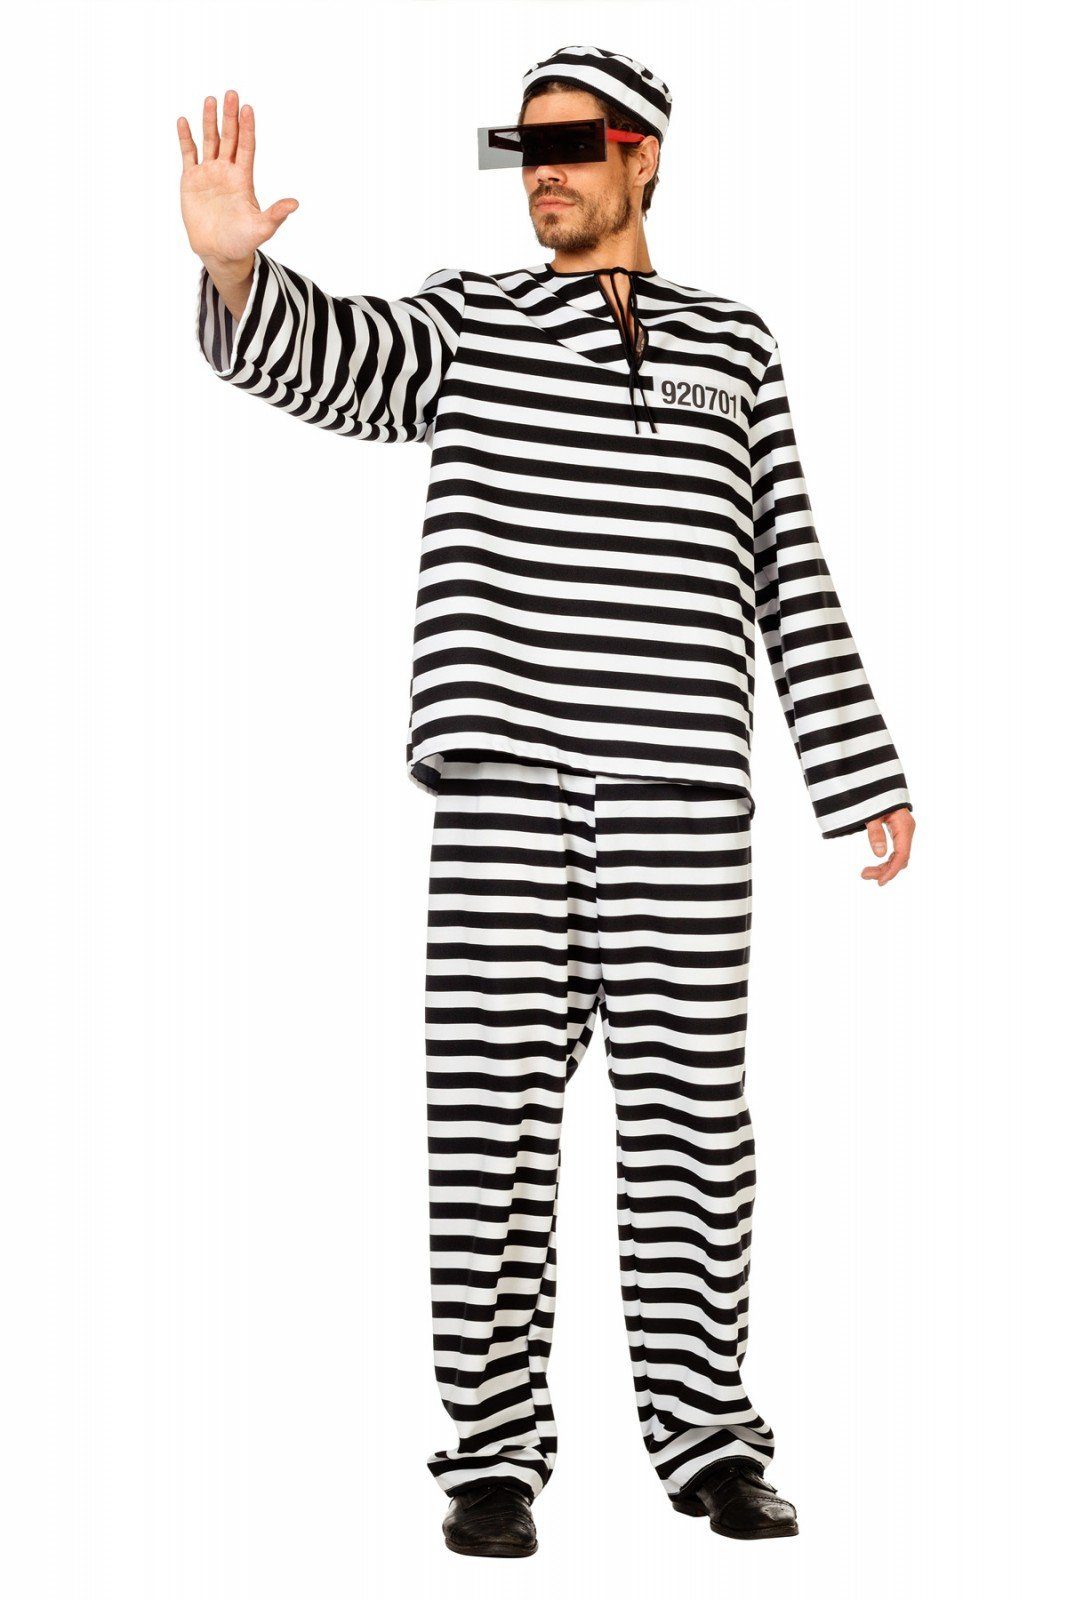 Wilbers Partyanzug Sträflingskostüm – Kostüm für Herren – Gefangener  Verbrecher Häftling in Gr. 48 - 64